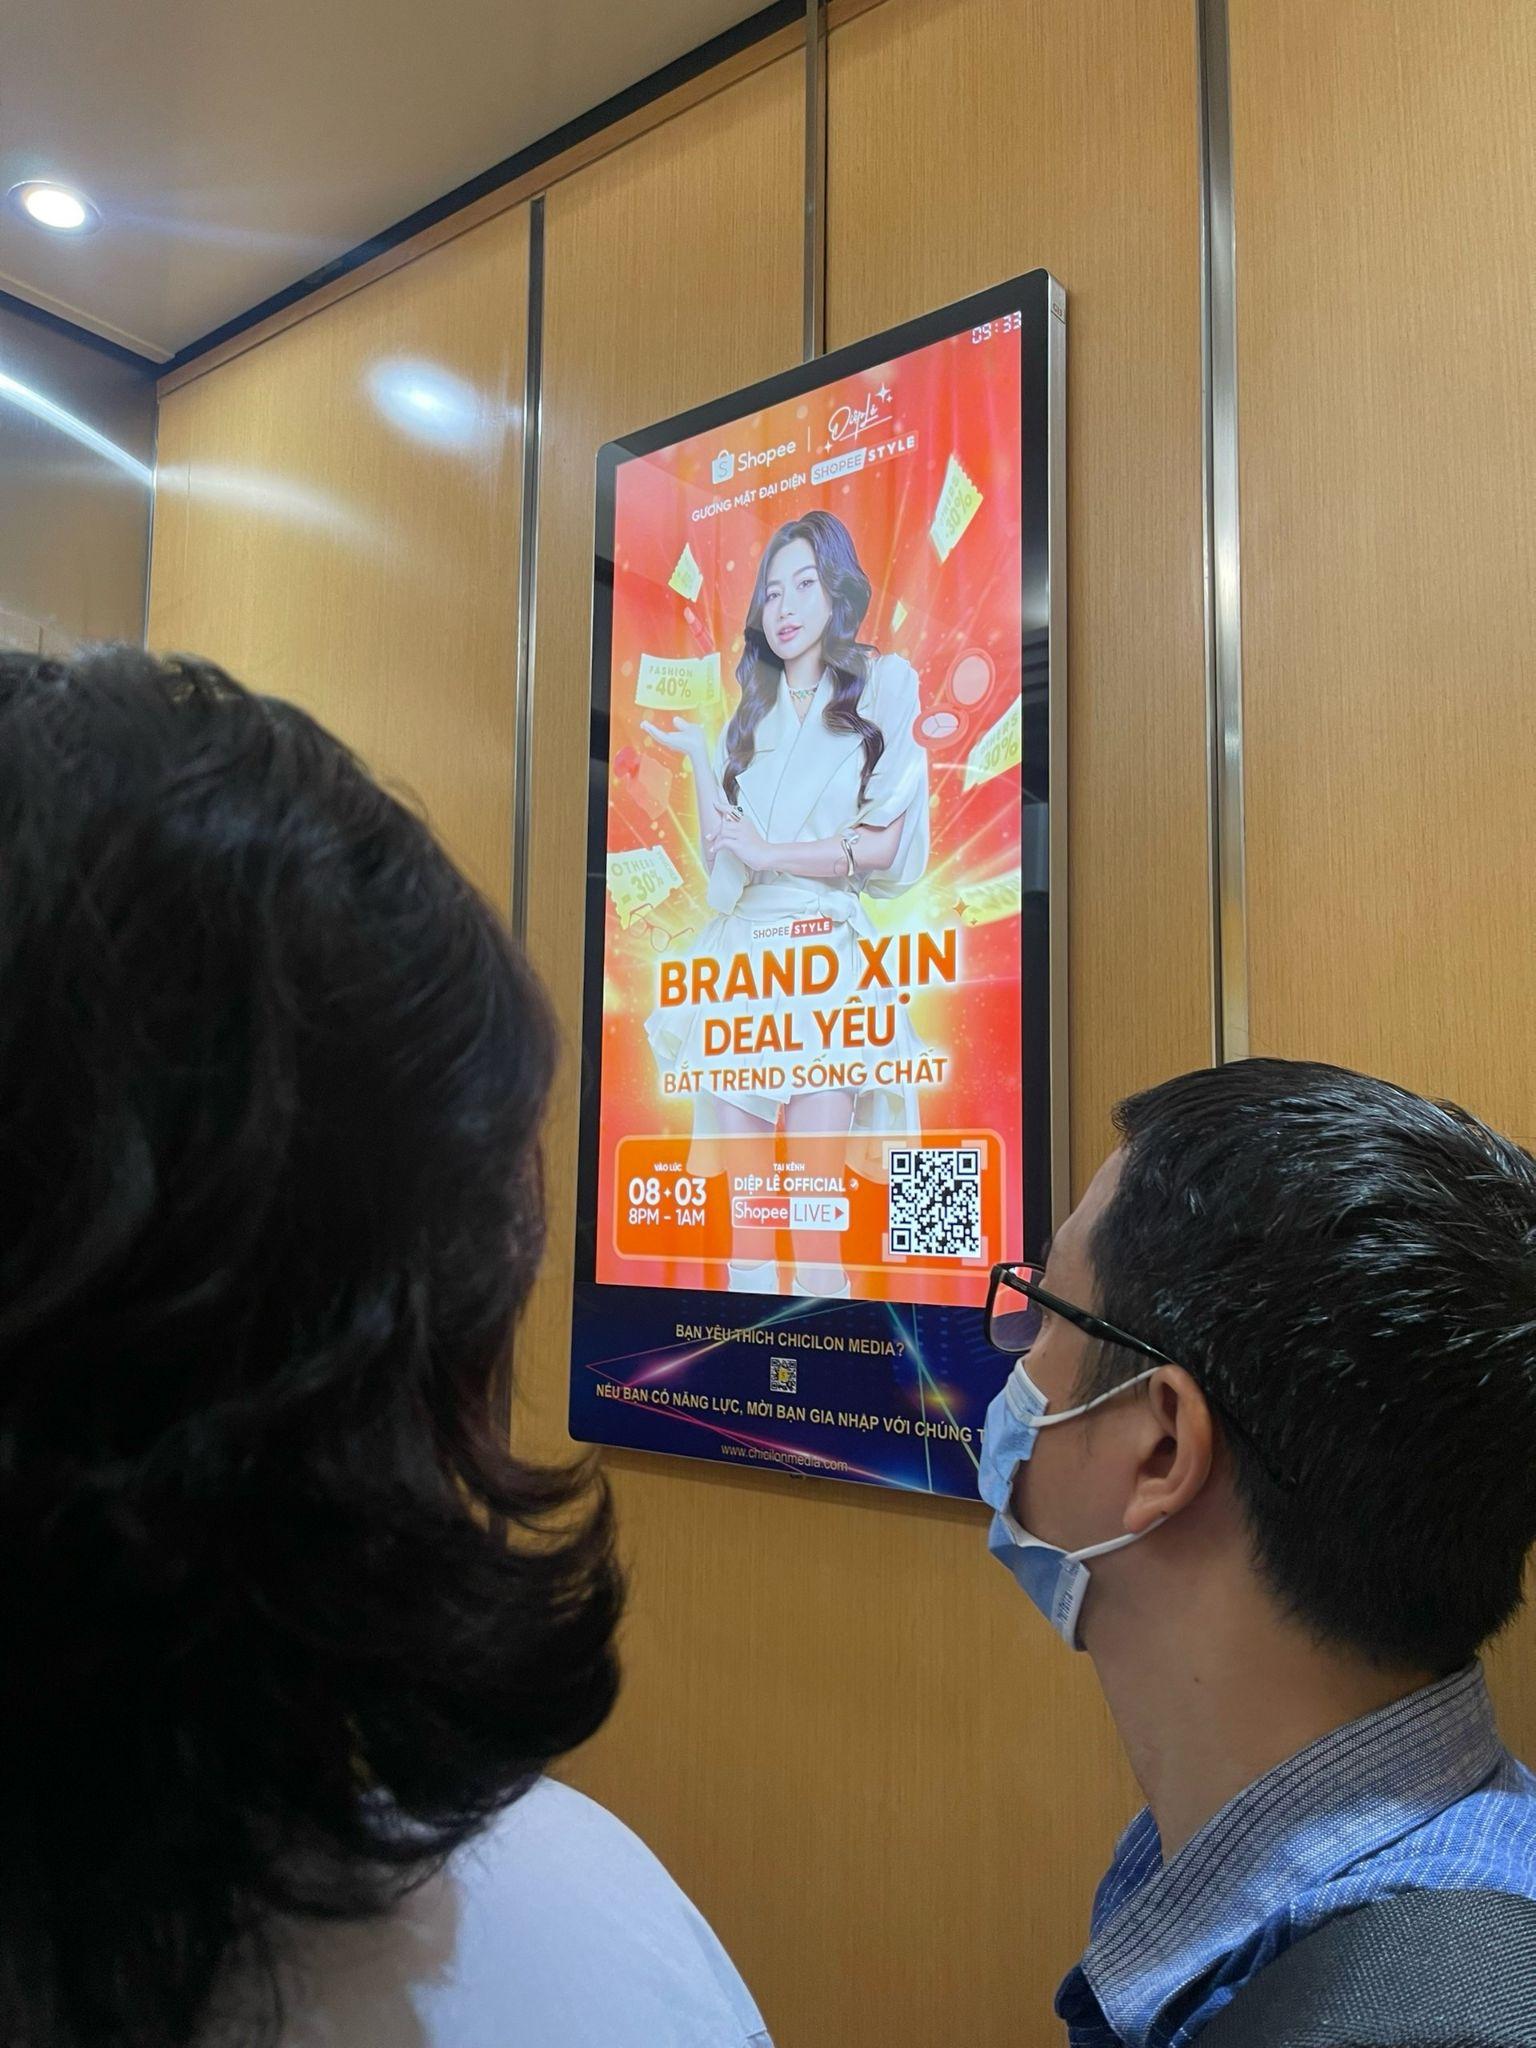 Hình ảnh Diệp Lê với vai trò “Gương mặt Đại diện” của Shopee Style cũng bắt đầu xuất hiện trên các billboard tại nhiều vị trí ở TP.HCM và Hà Nội.